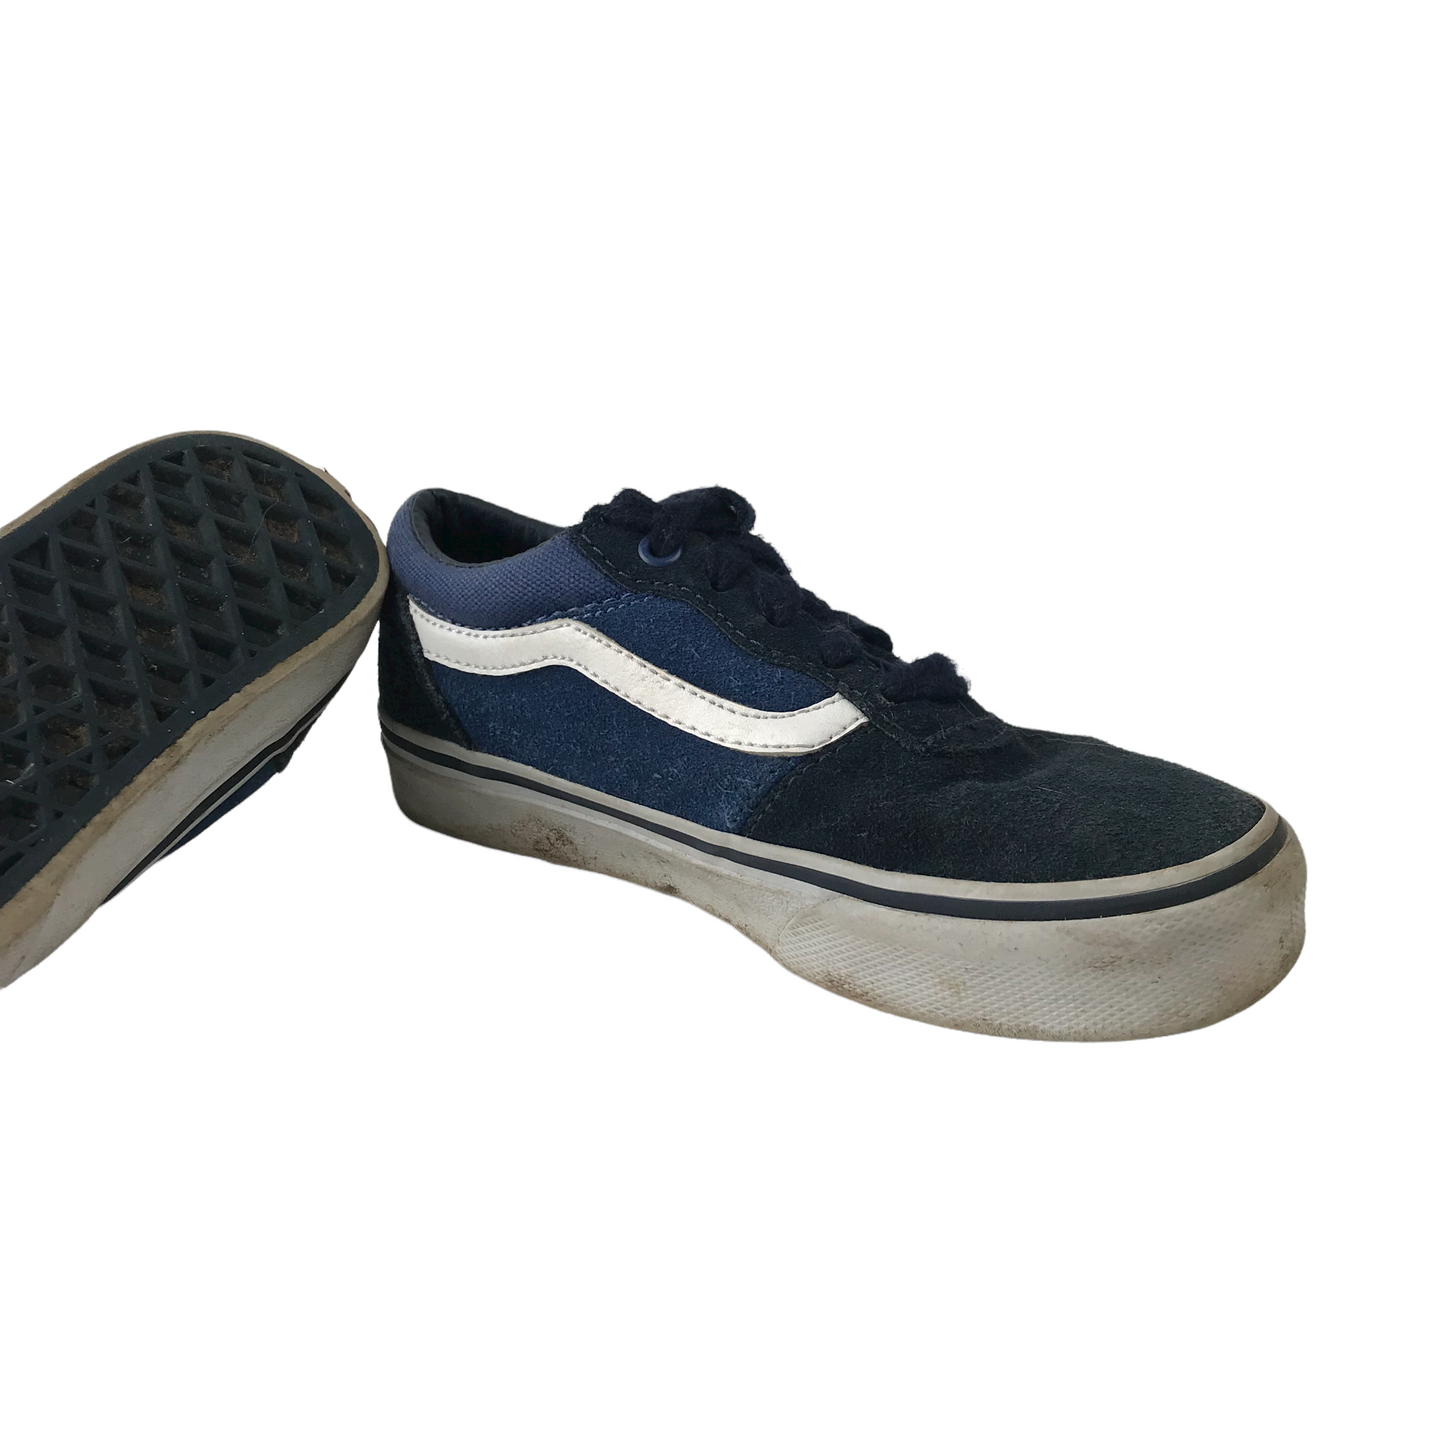 Vans Black and Blue Canvas Trainers Shoe Size 11 (jr)